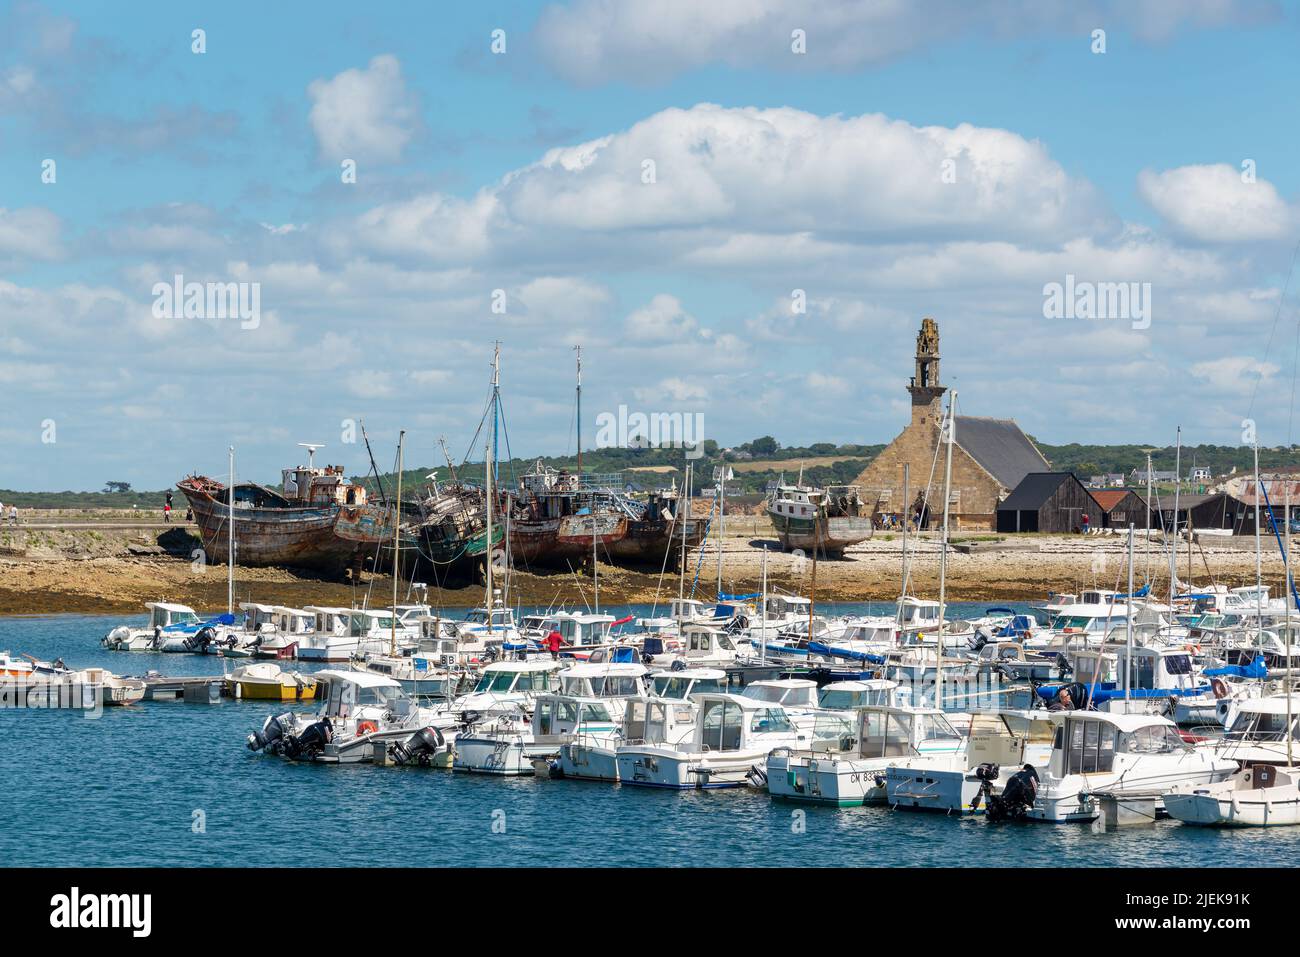 El puerto de Camaret y el cementerio de barcos en la península de Crozon, Finisterre, Bretaña Francia Foto de stock